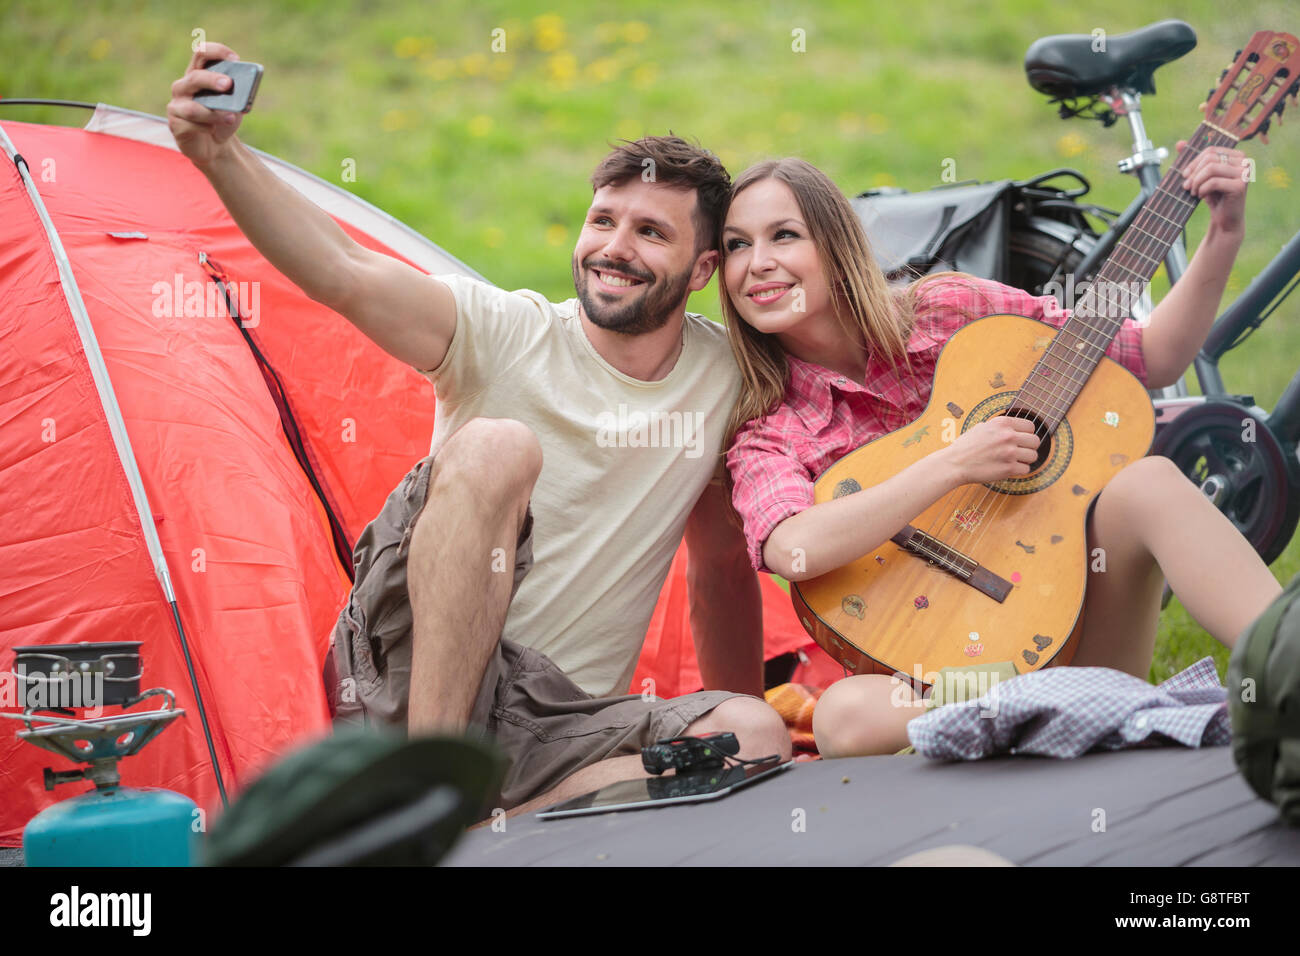 Jeune couple de camping en tenant selfies Banque D'Images